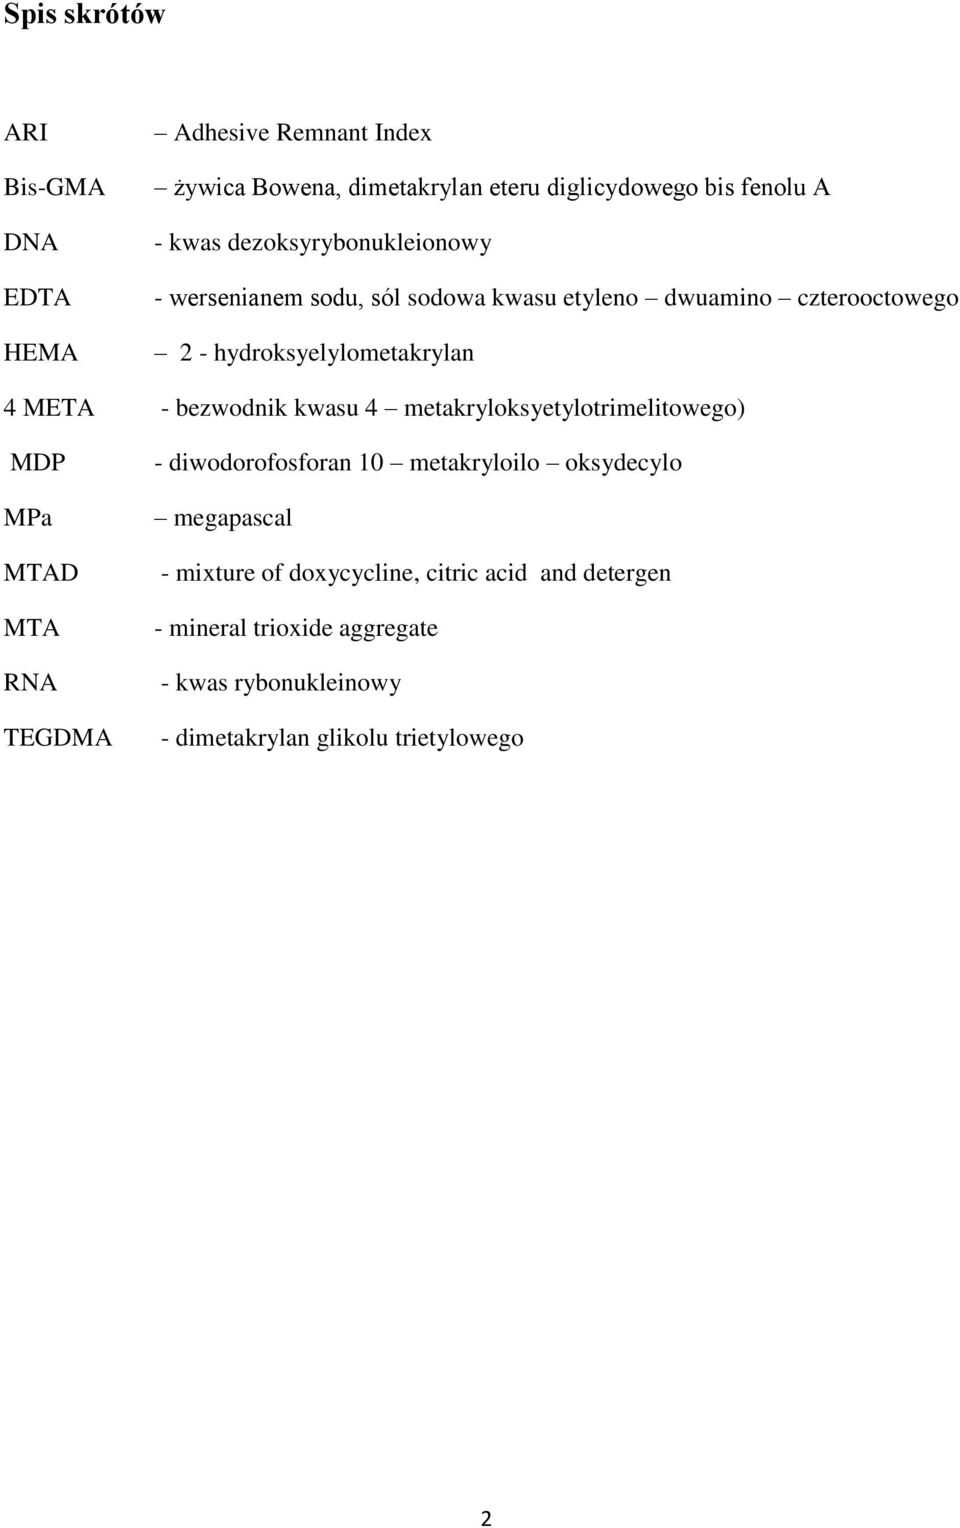 bezwodnik kwasu 4 metakryloksyetylotrimelitowego) MDP MPa MTAD MTA RNA TEGDMA - diwodorofosforan 10 metakryloilo oksydecylo